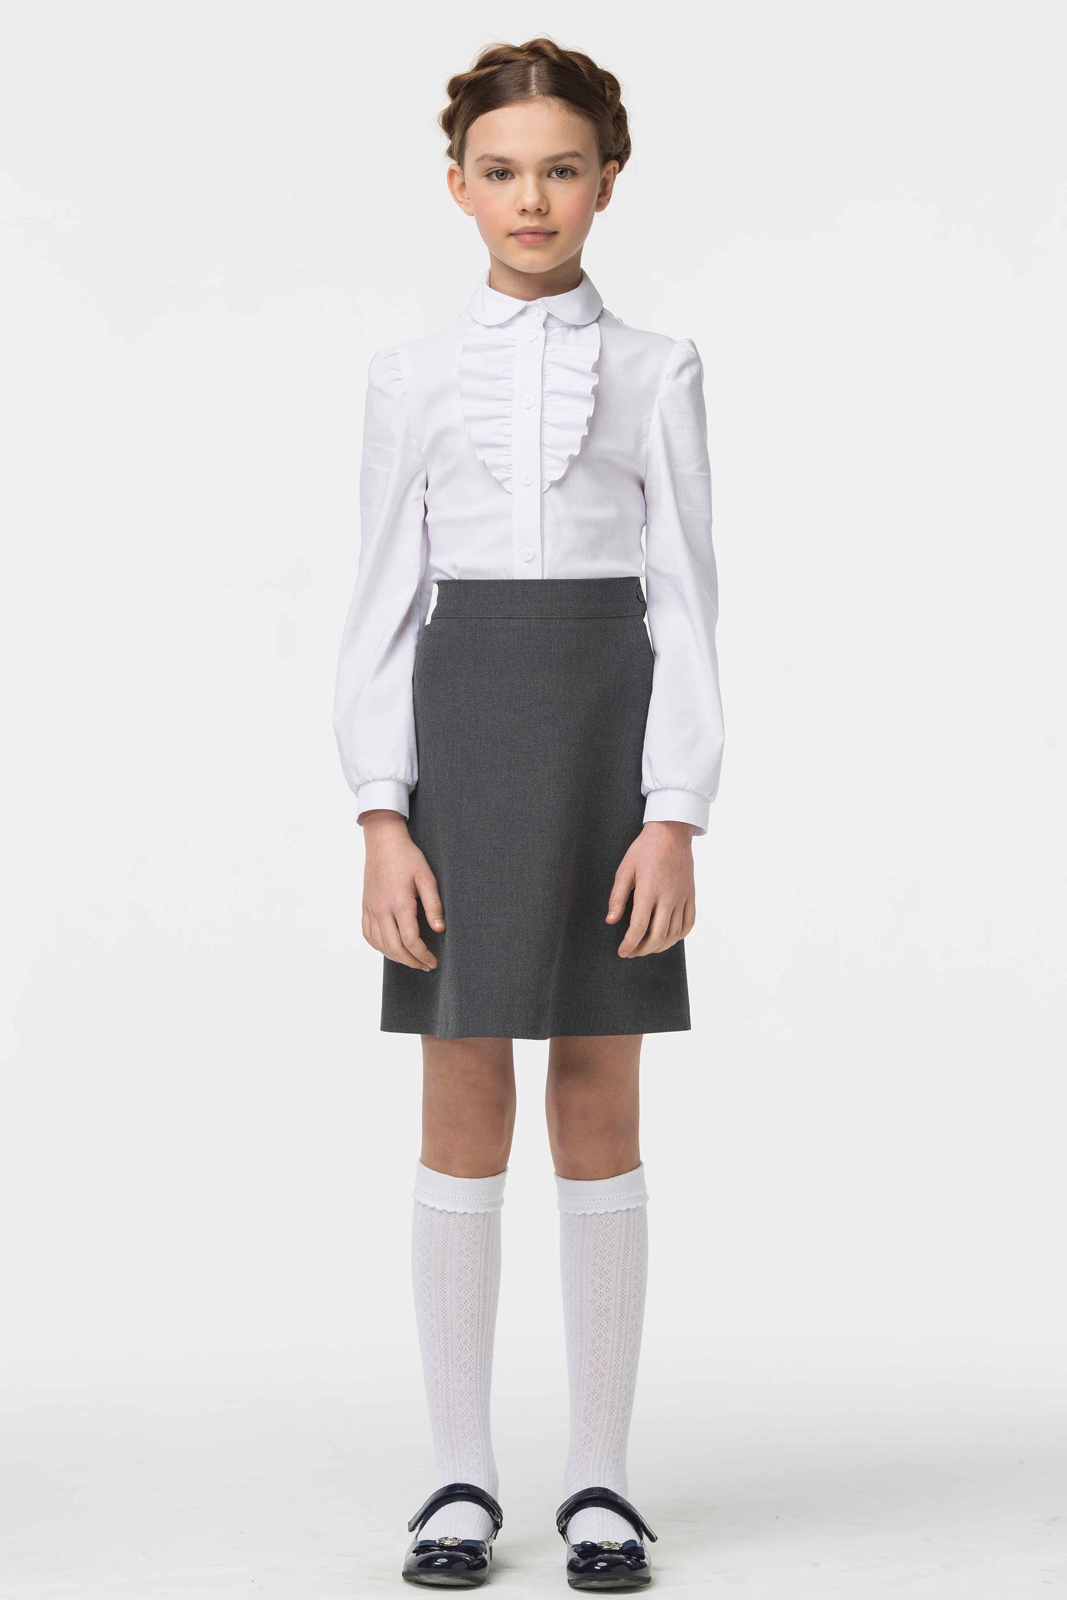 Блузка для девочки Смена, цвет: белый. 16с507. Размер 122